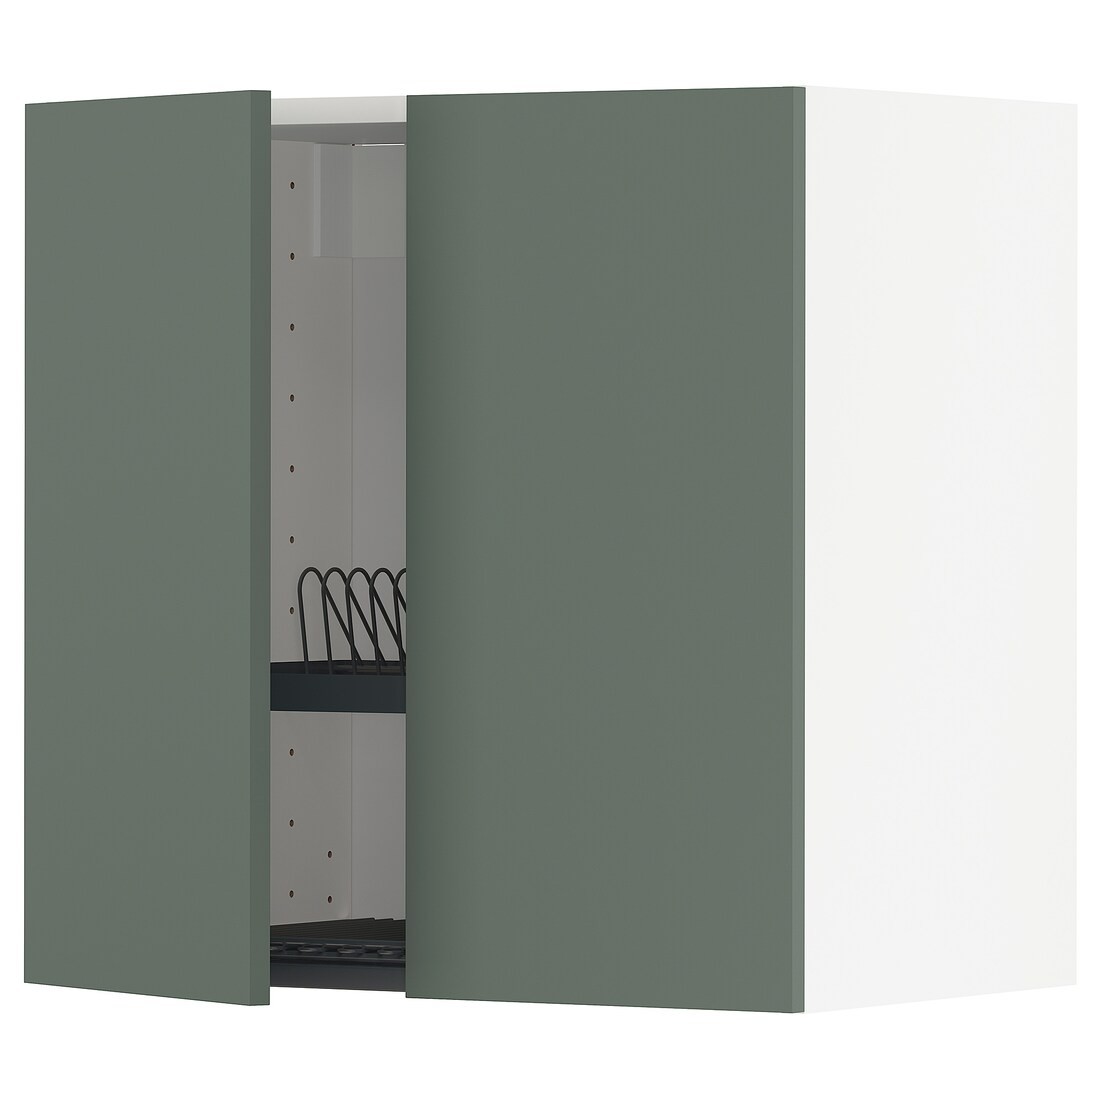 METOD МЕТОД Навесной шкаф с посудной сушилкой / 2 дверцы, белый / Bodarp серо-зеленый, 60x60 см